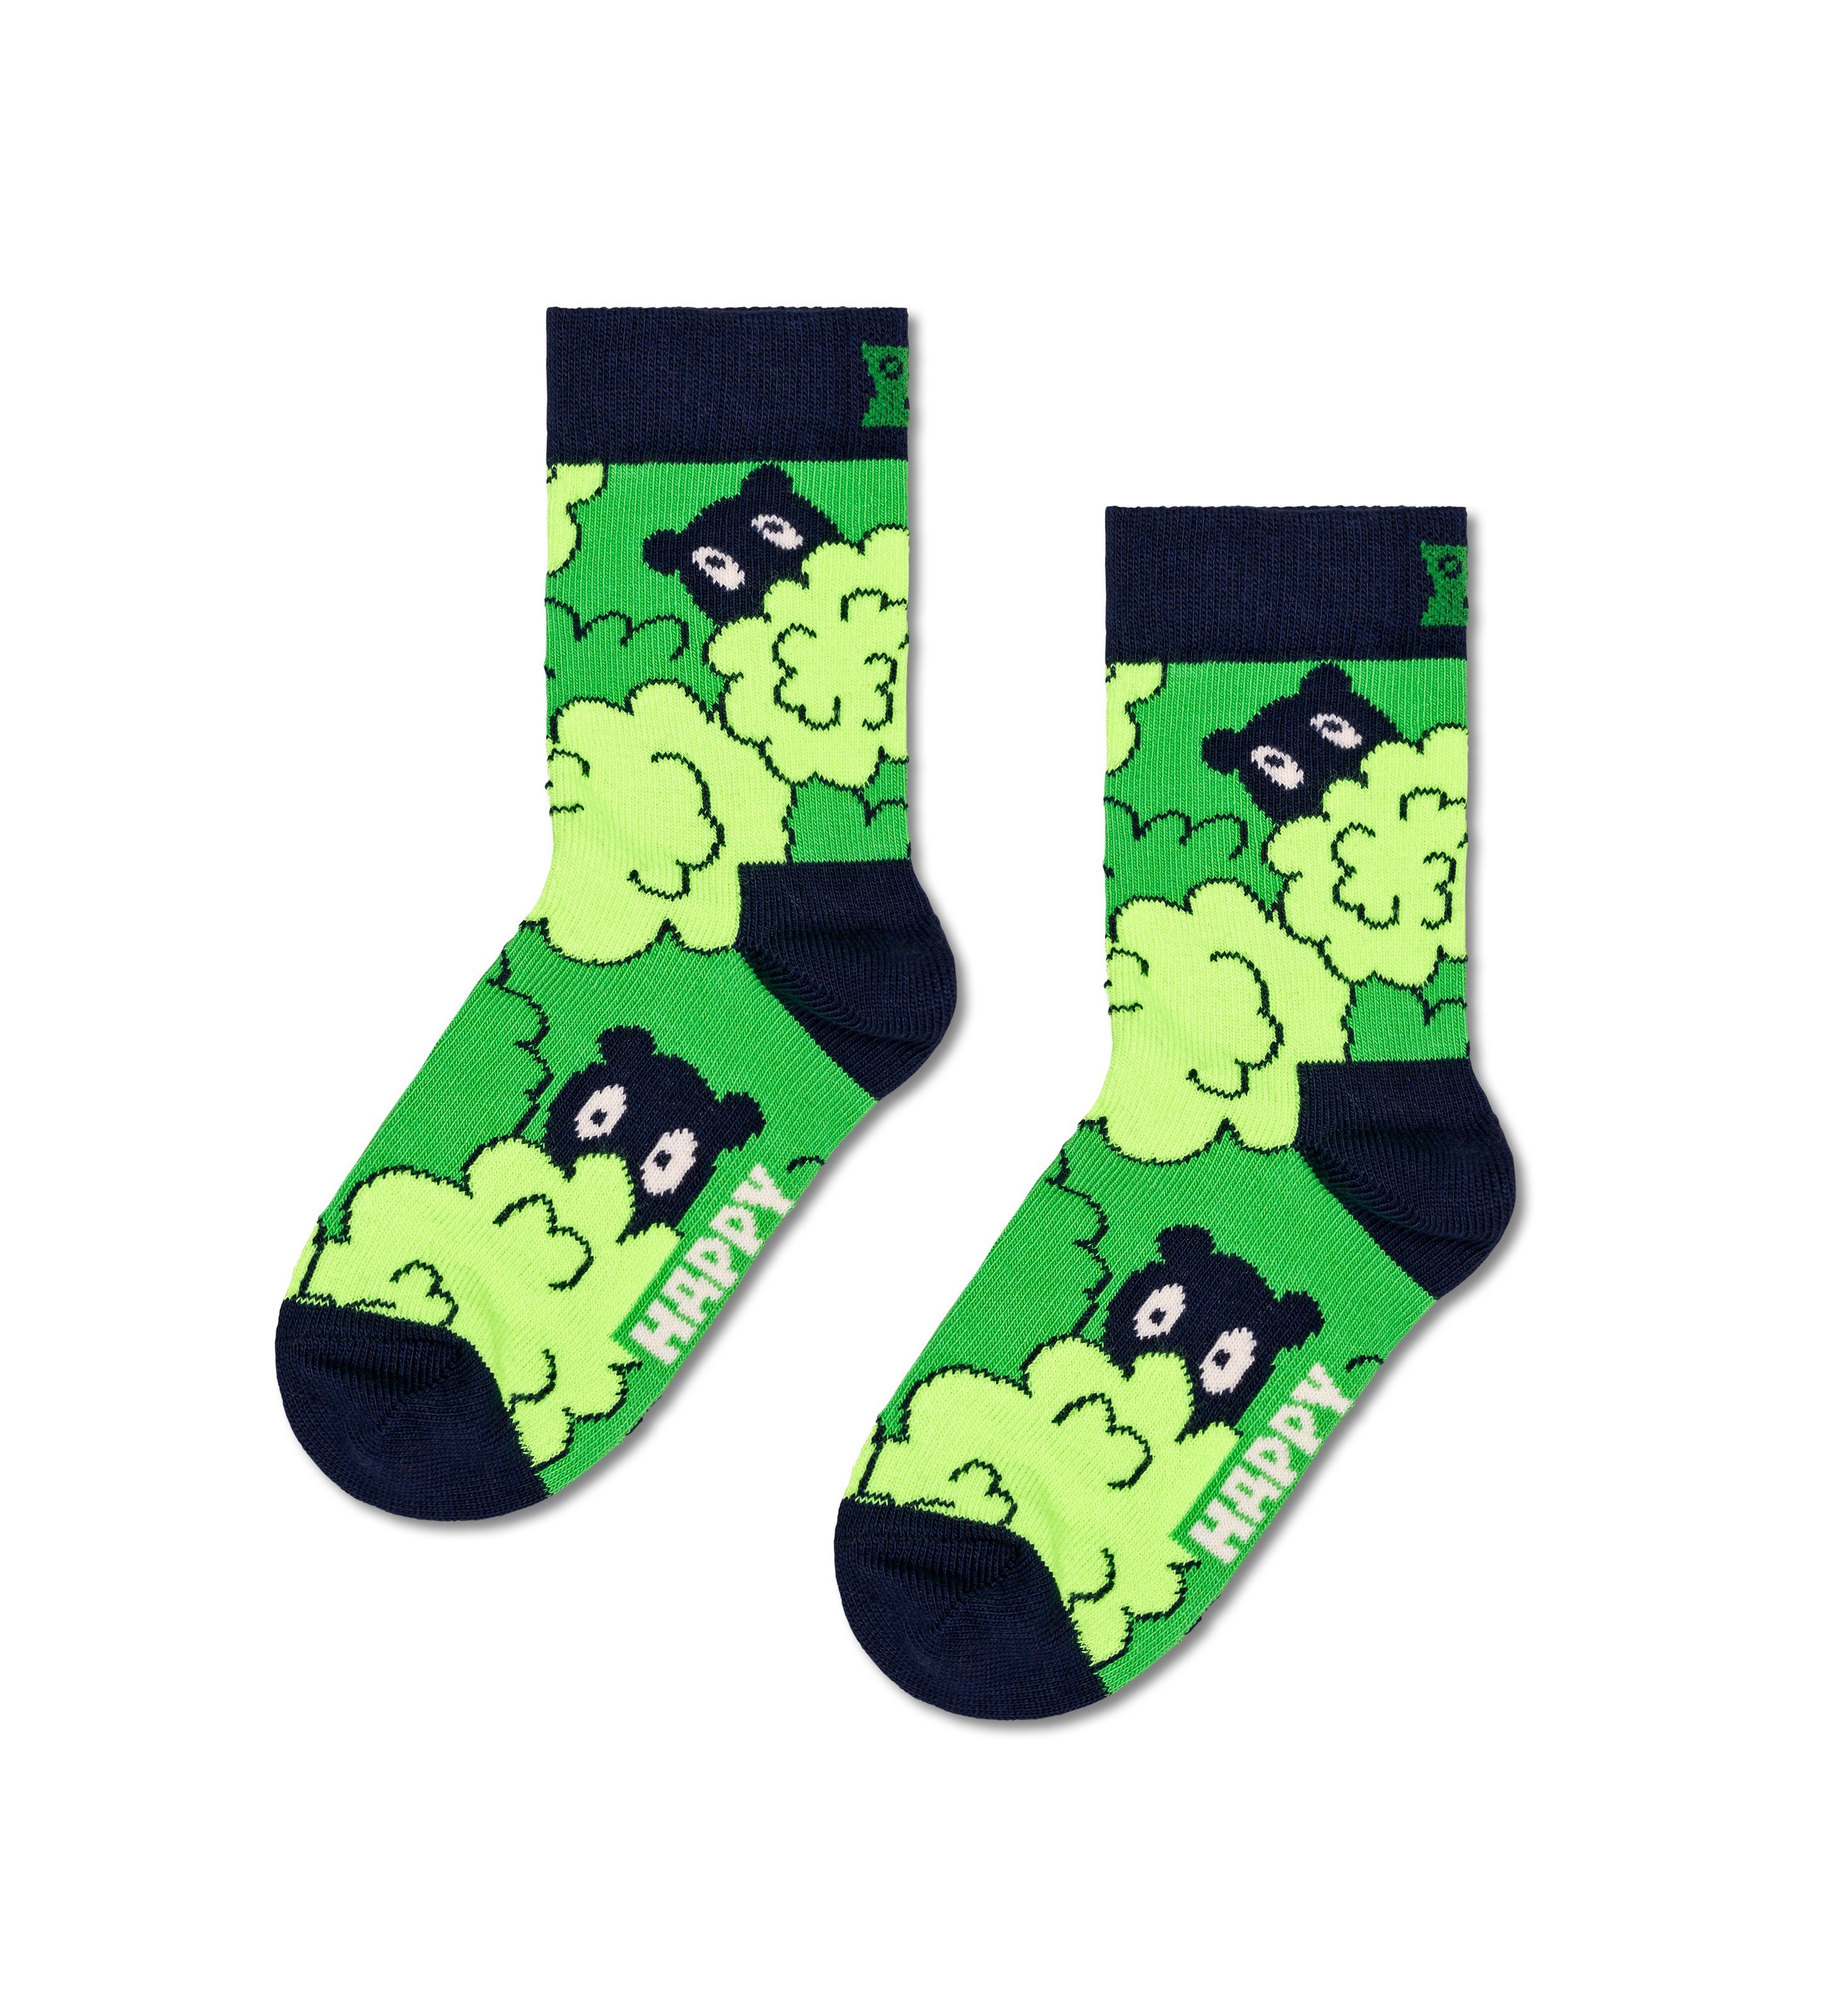 Peekaboo Socken Happy Set (3-Paar) Socks Peek-A-Boo Gift